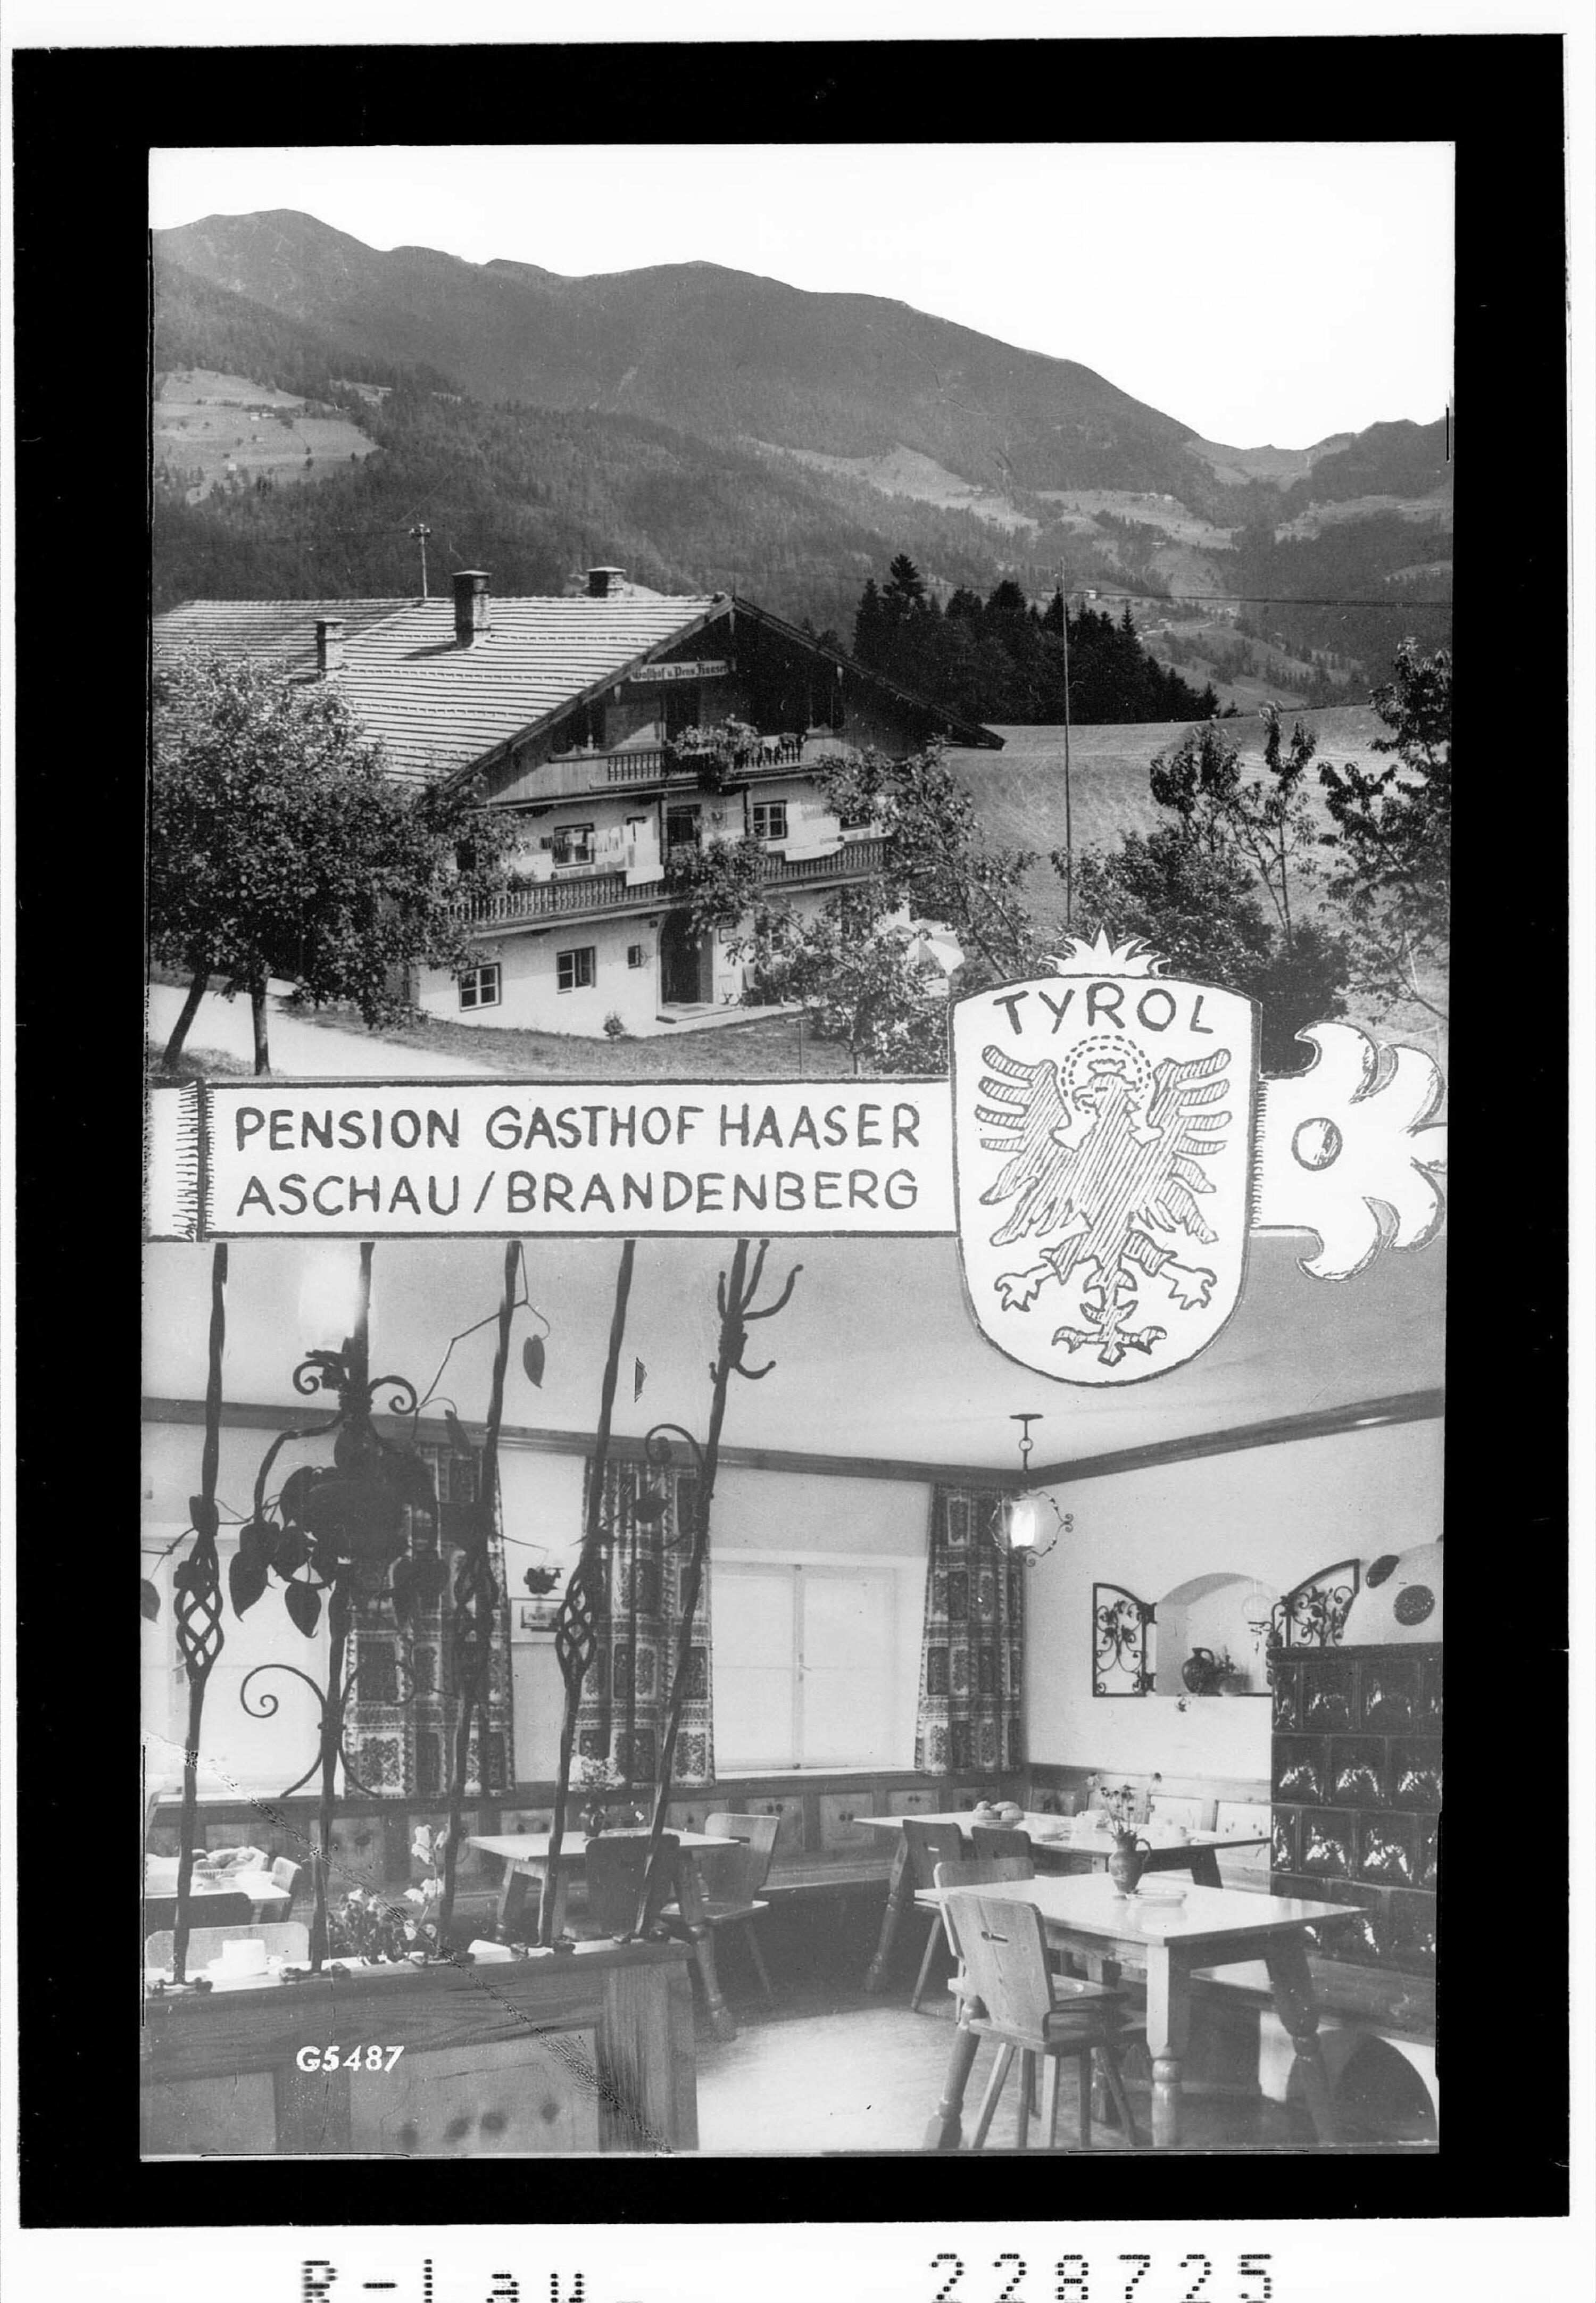 Pension Gasthof Haaser / Aschau / Brandenberg / Tirol></div>


    <hr>
    <div class=